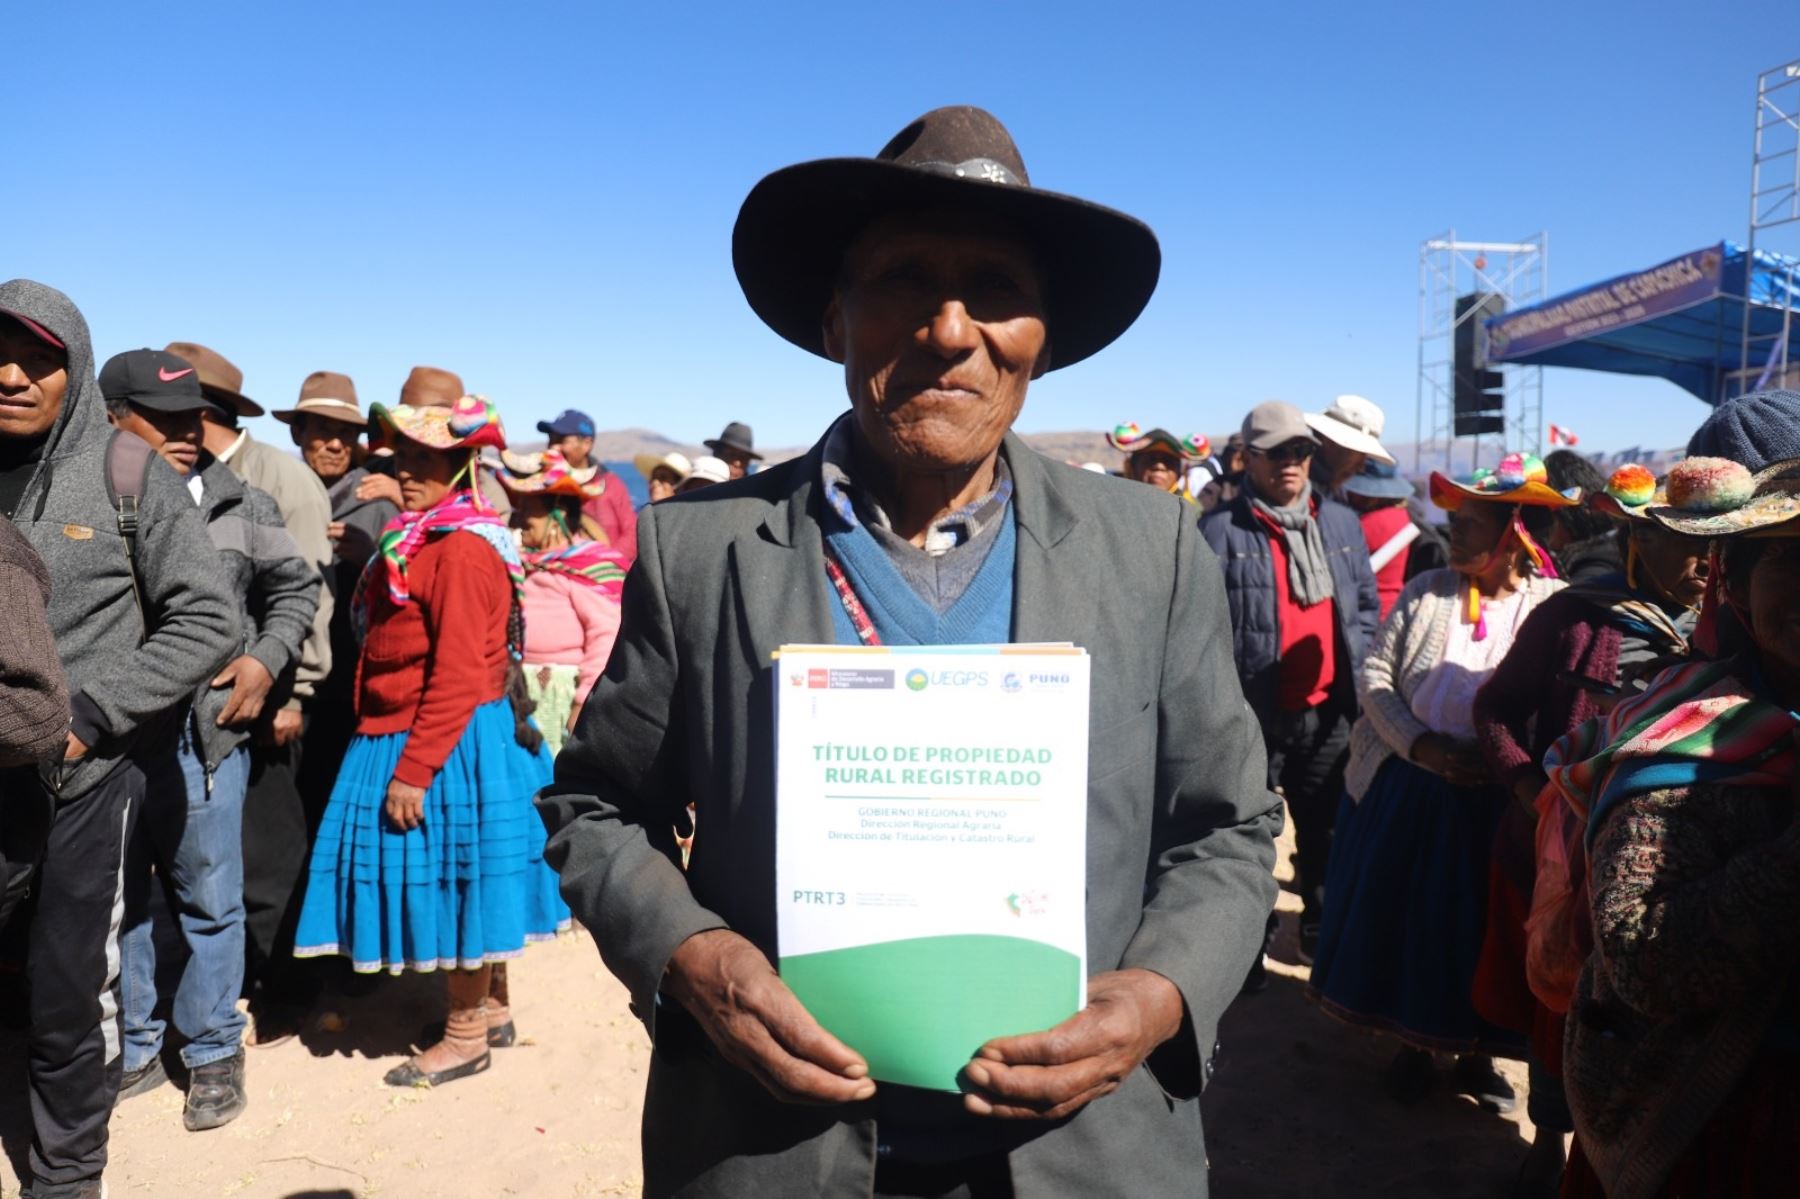 Productor agrario beneficiario de la titulación de su predio rural en la región Puno, facilitada por el Ministerio de Desarrollo Agrario y Riego (Midagri). Foto: cortesía.